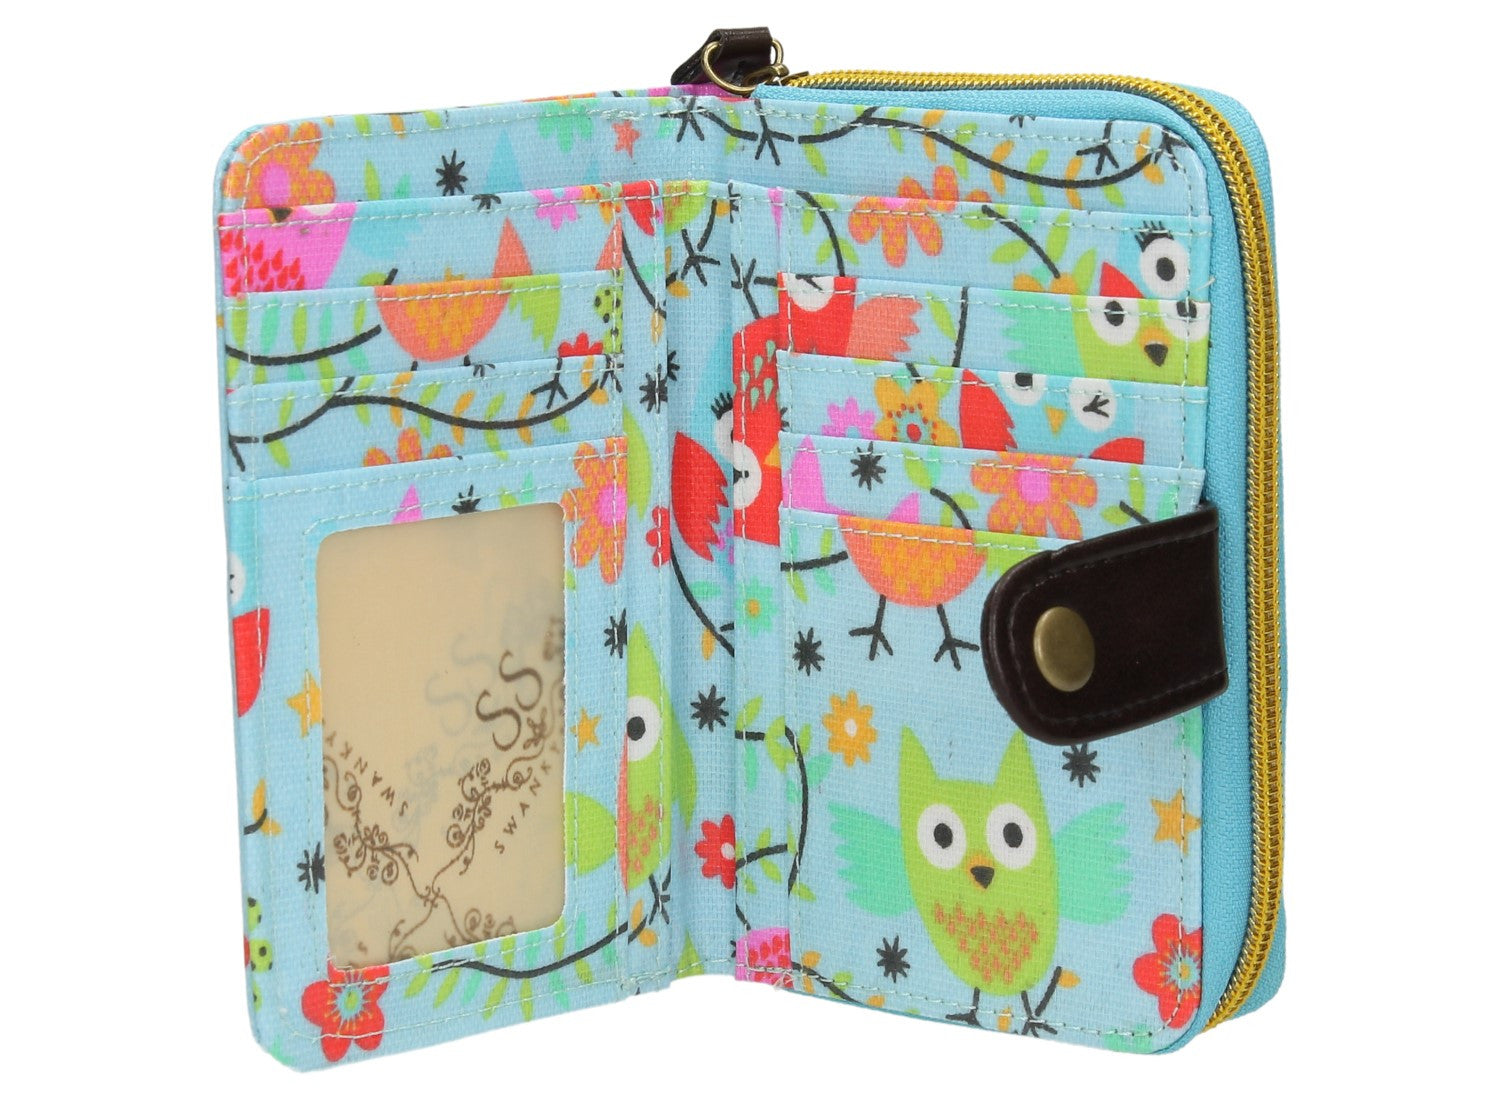 Swanky Swank Winking Owl Purse BlueCheap Cute School Wallets Purses Bags Animal